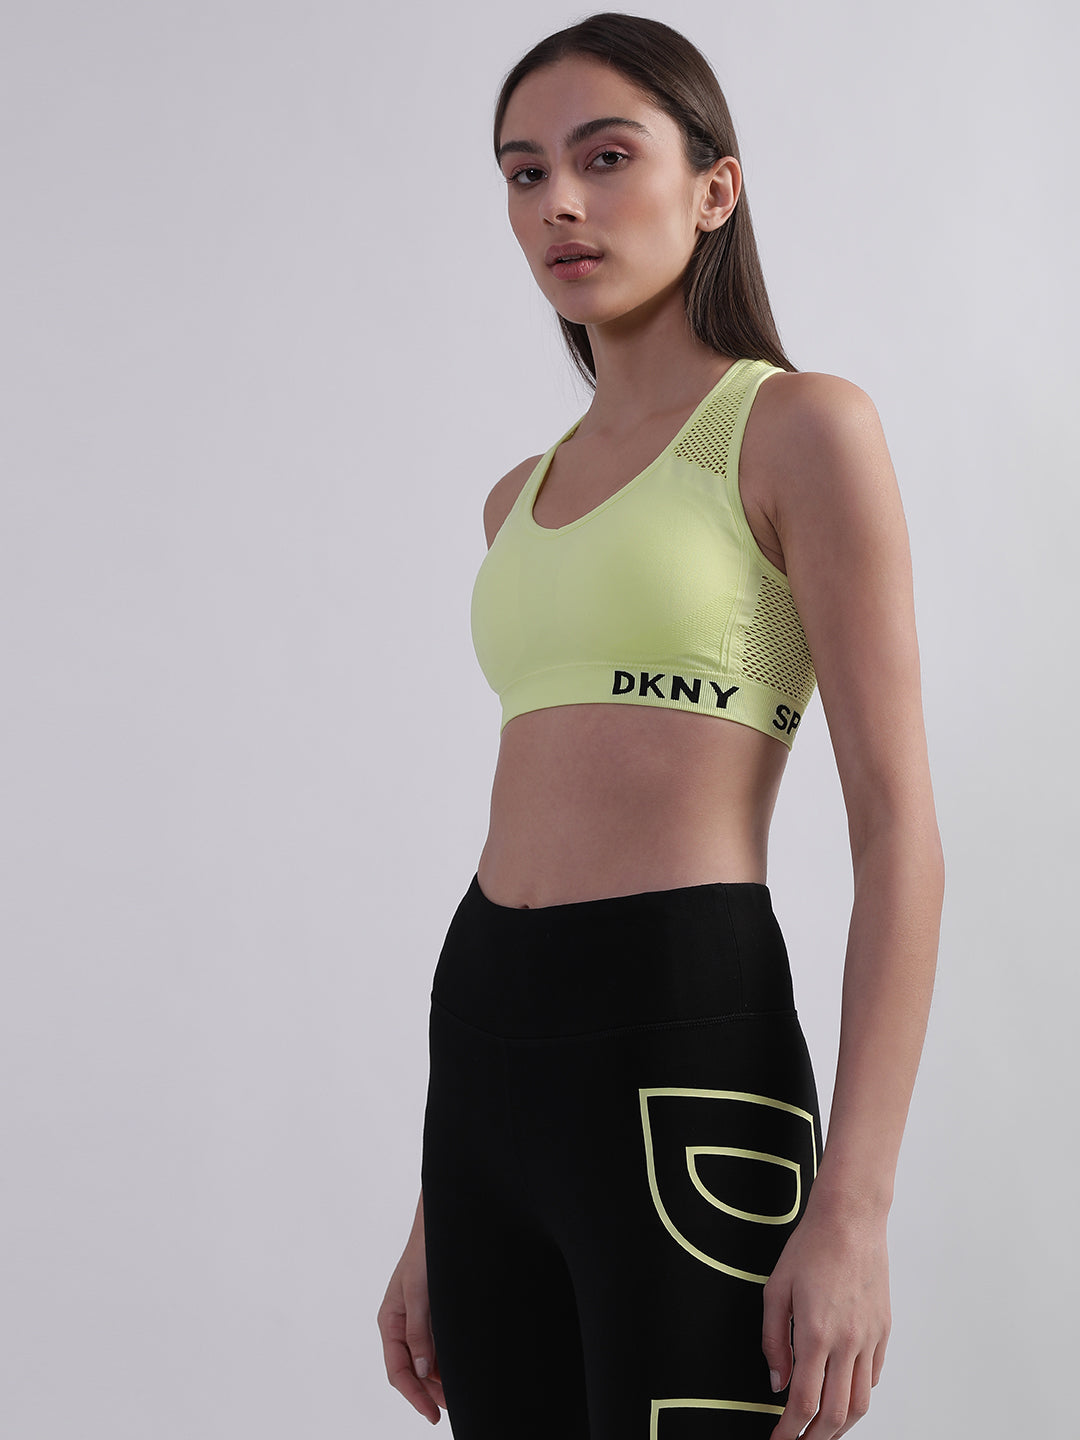 DKNY V-Neck Bras for Women